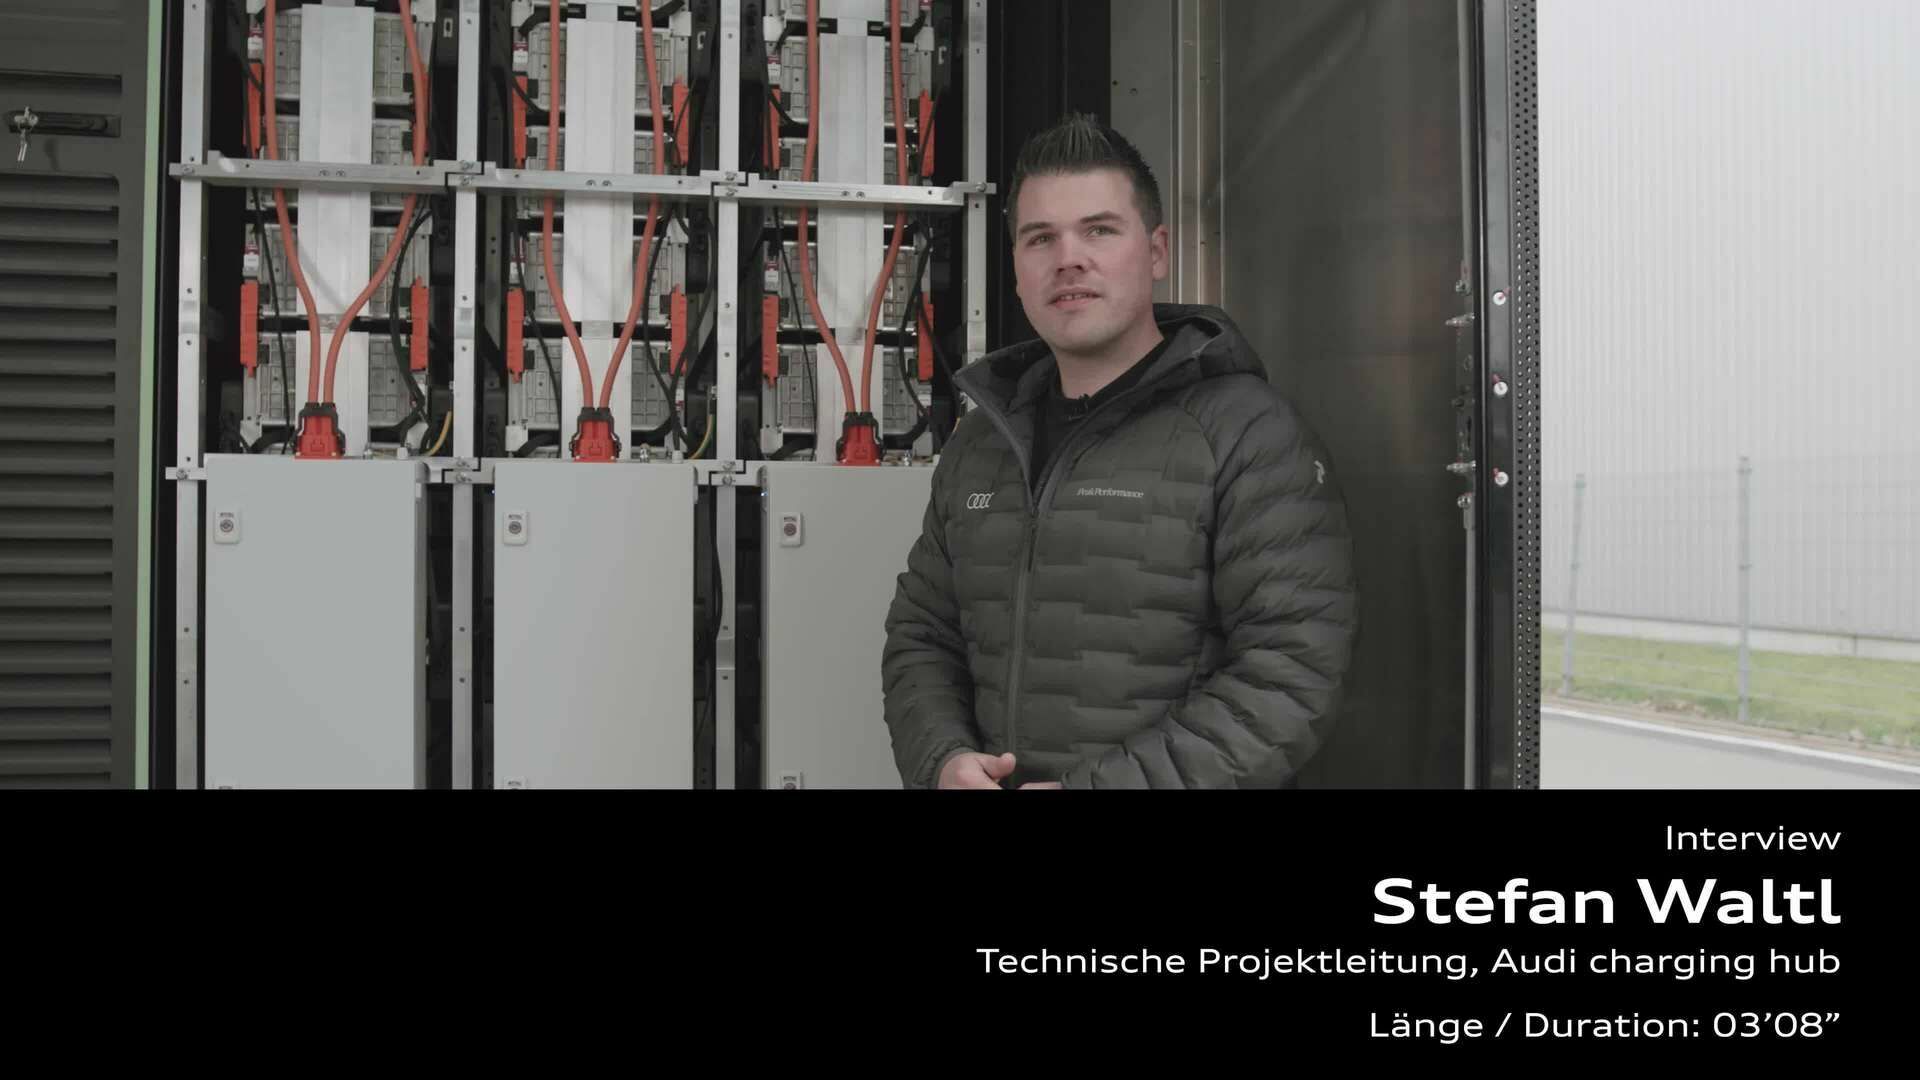 Footage: Statement von Stefan Waltl zum Audi charging hub Berlin